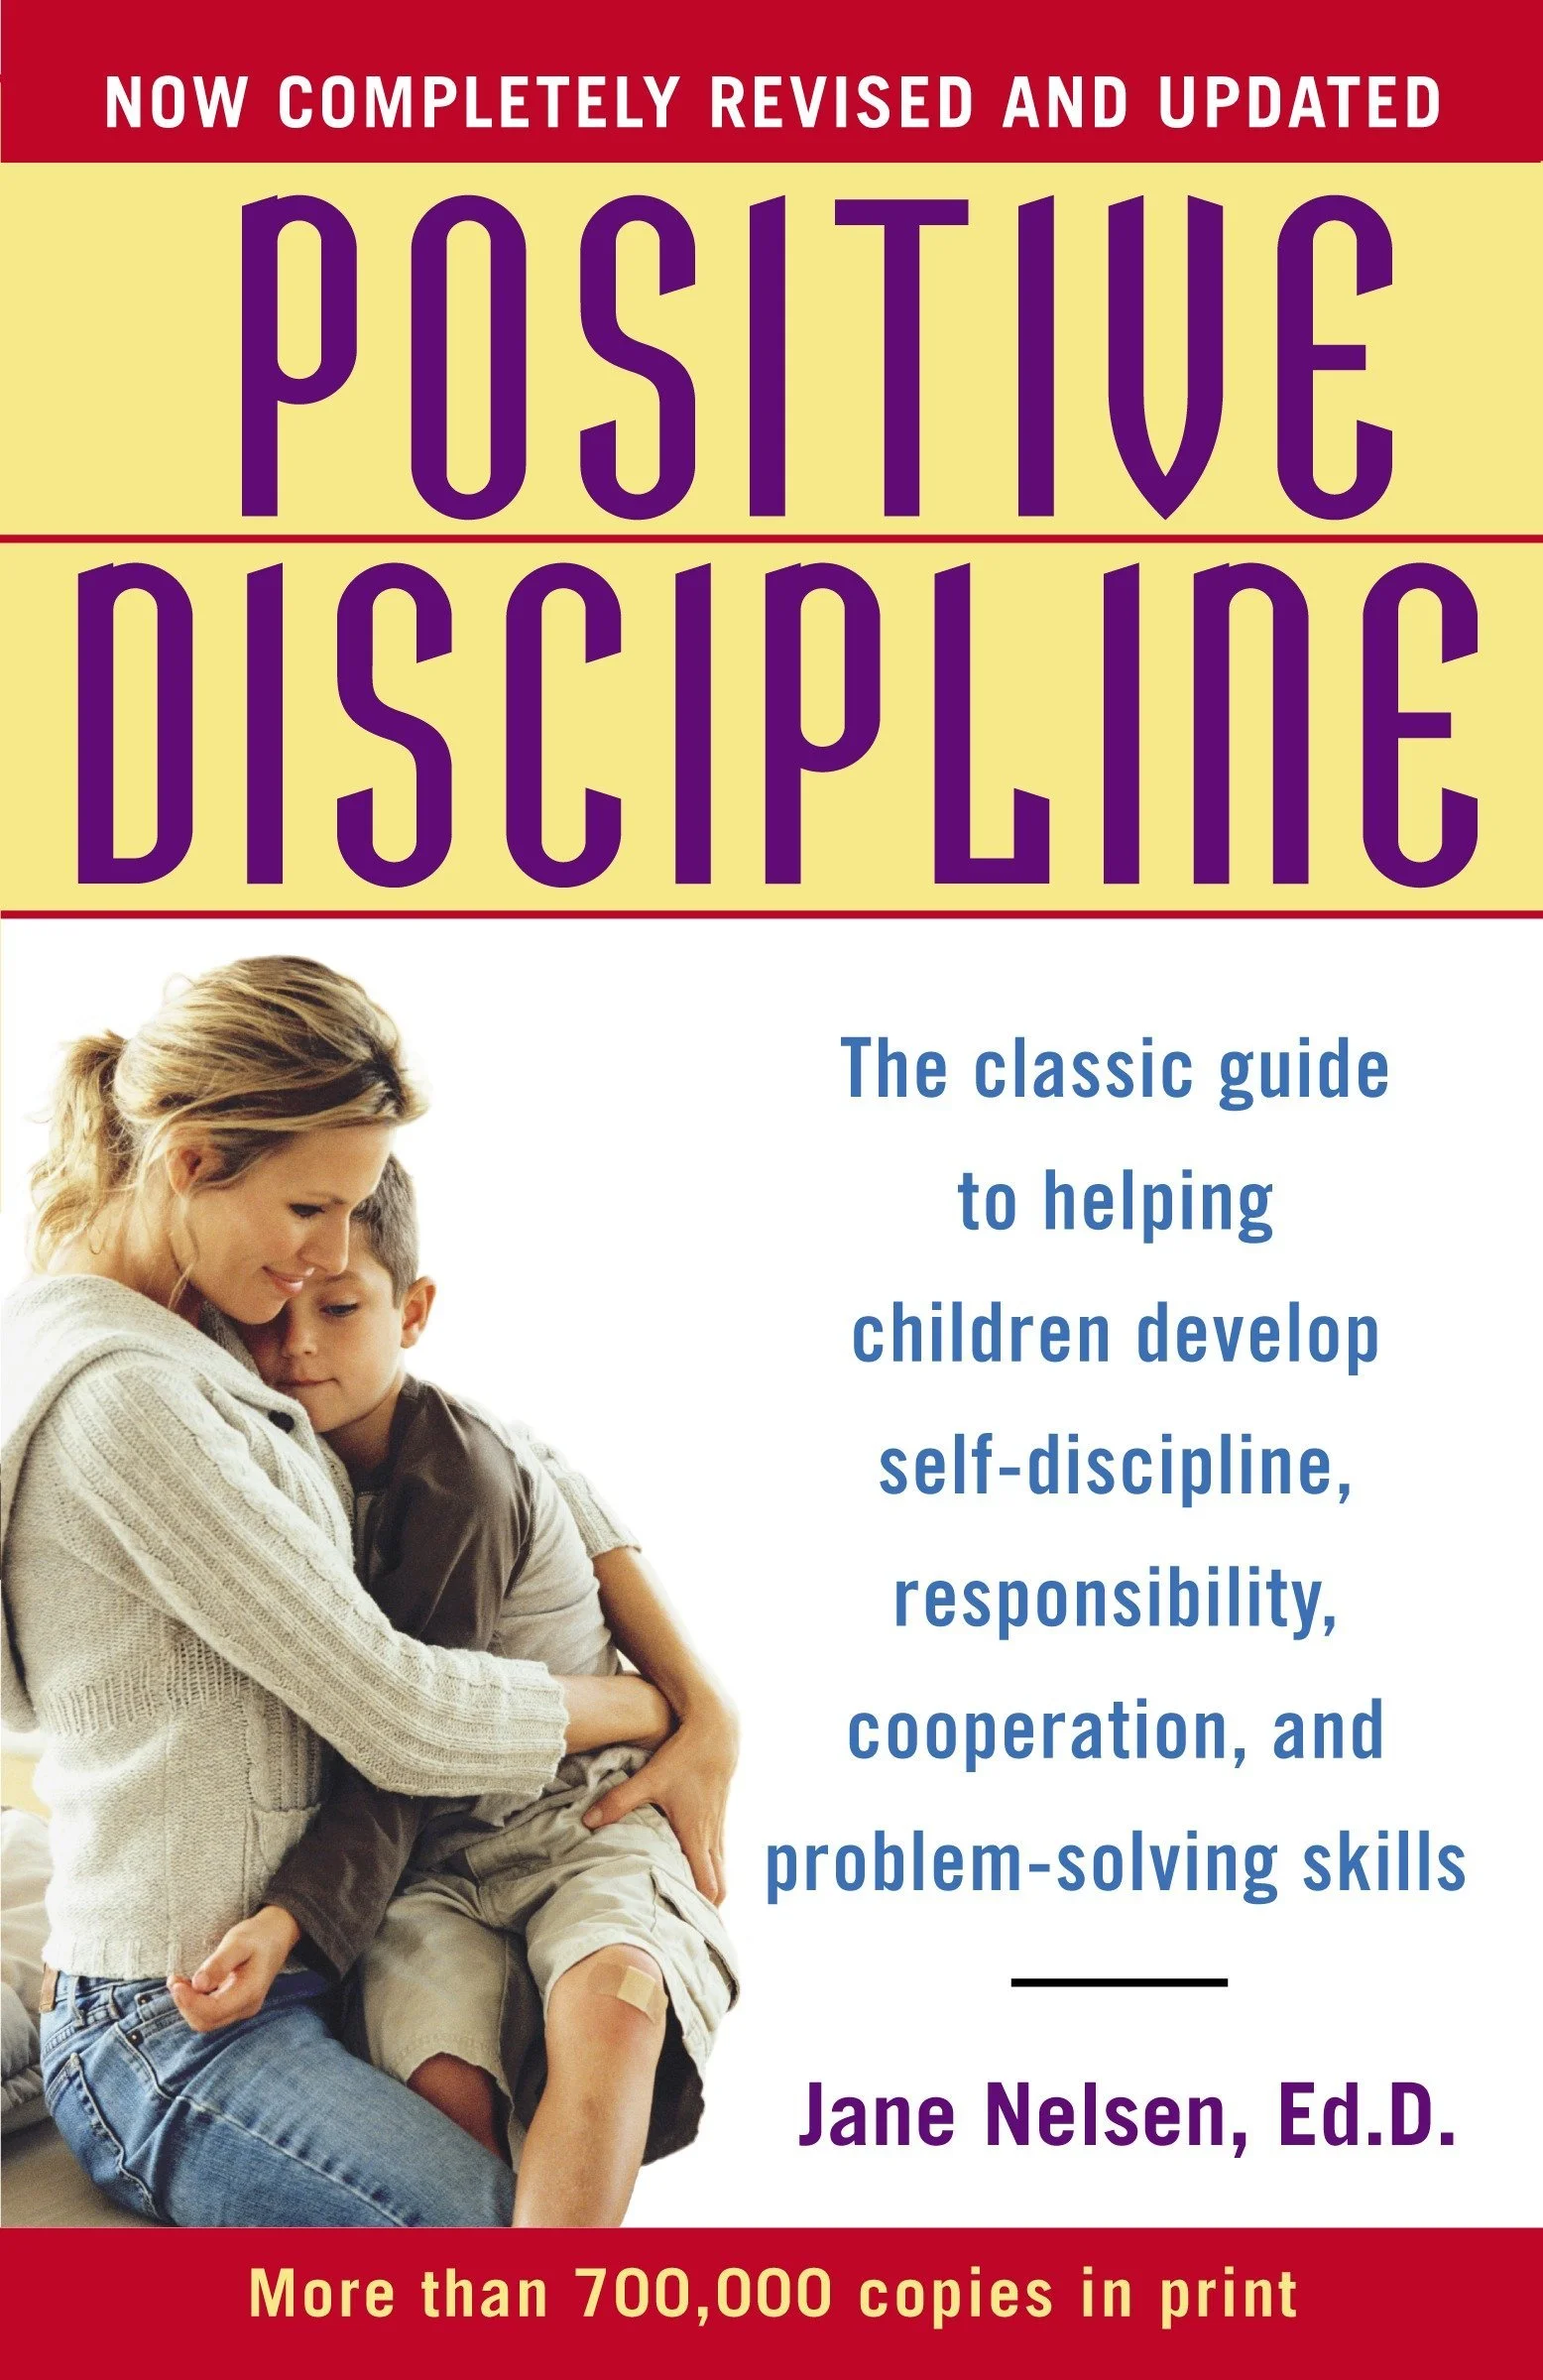 Positive Discipline by Jane Nelsen Ed.D.